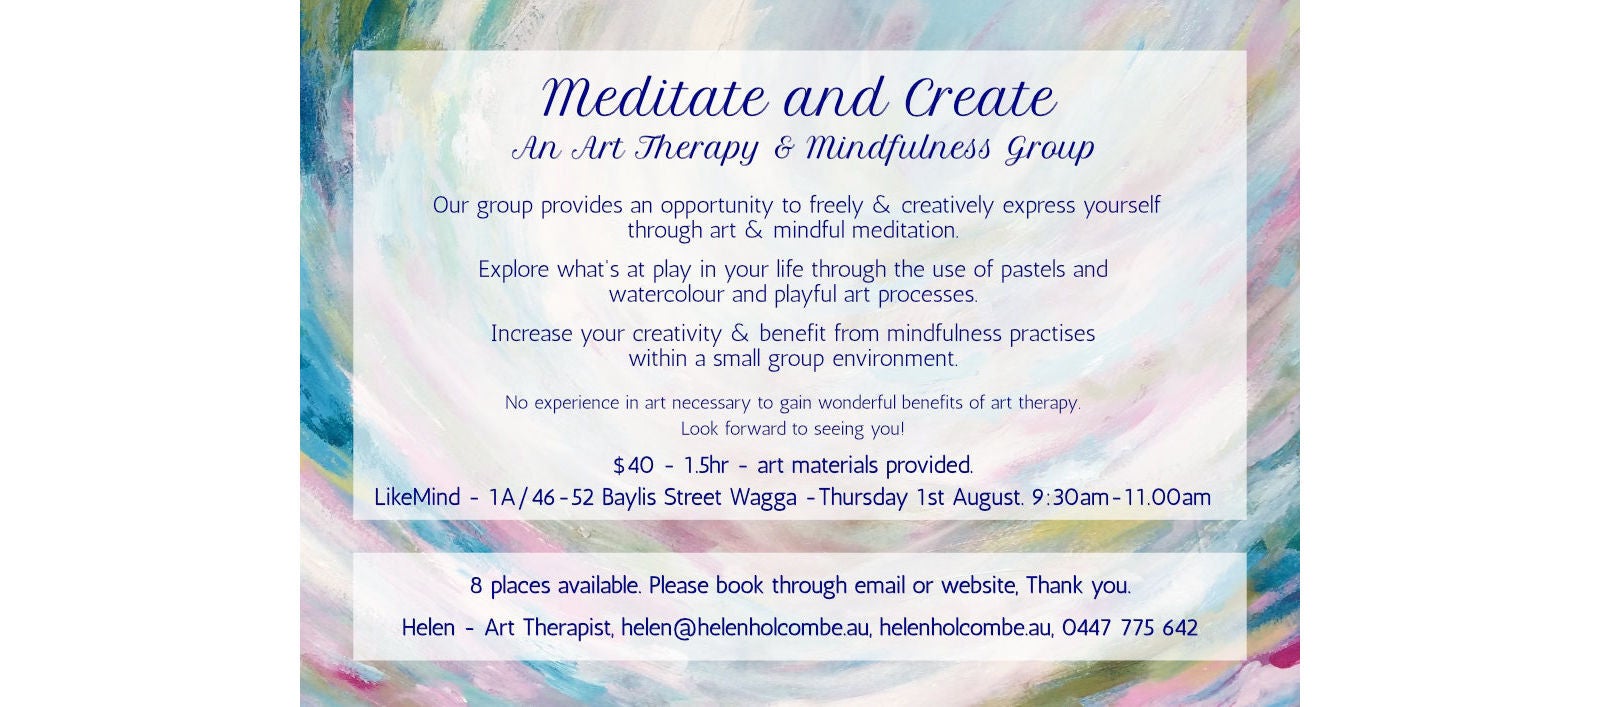 Meditate and Create @ Like Minds